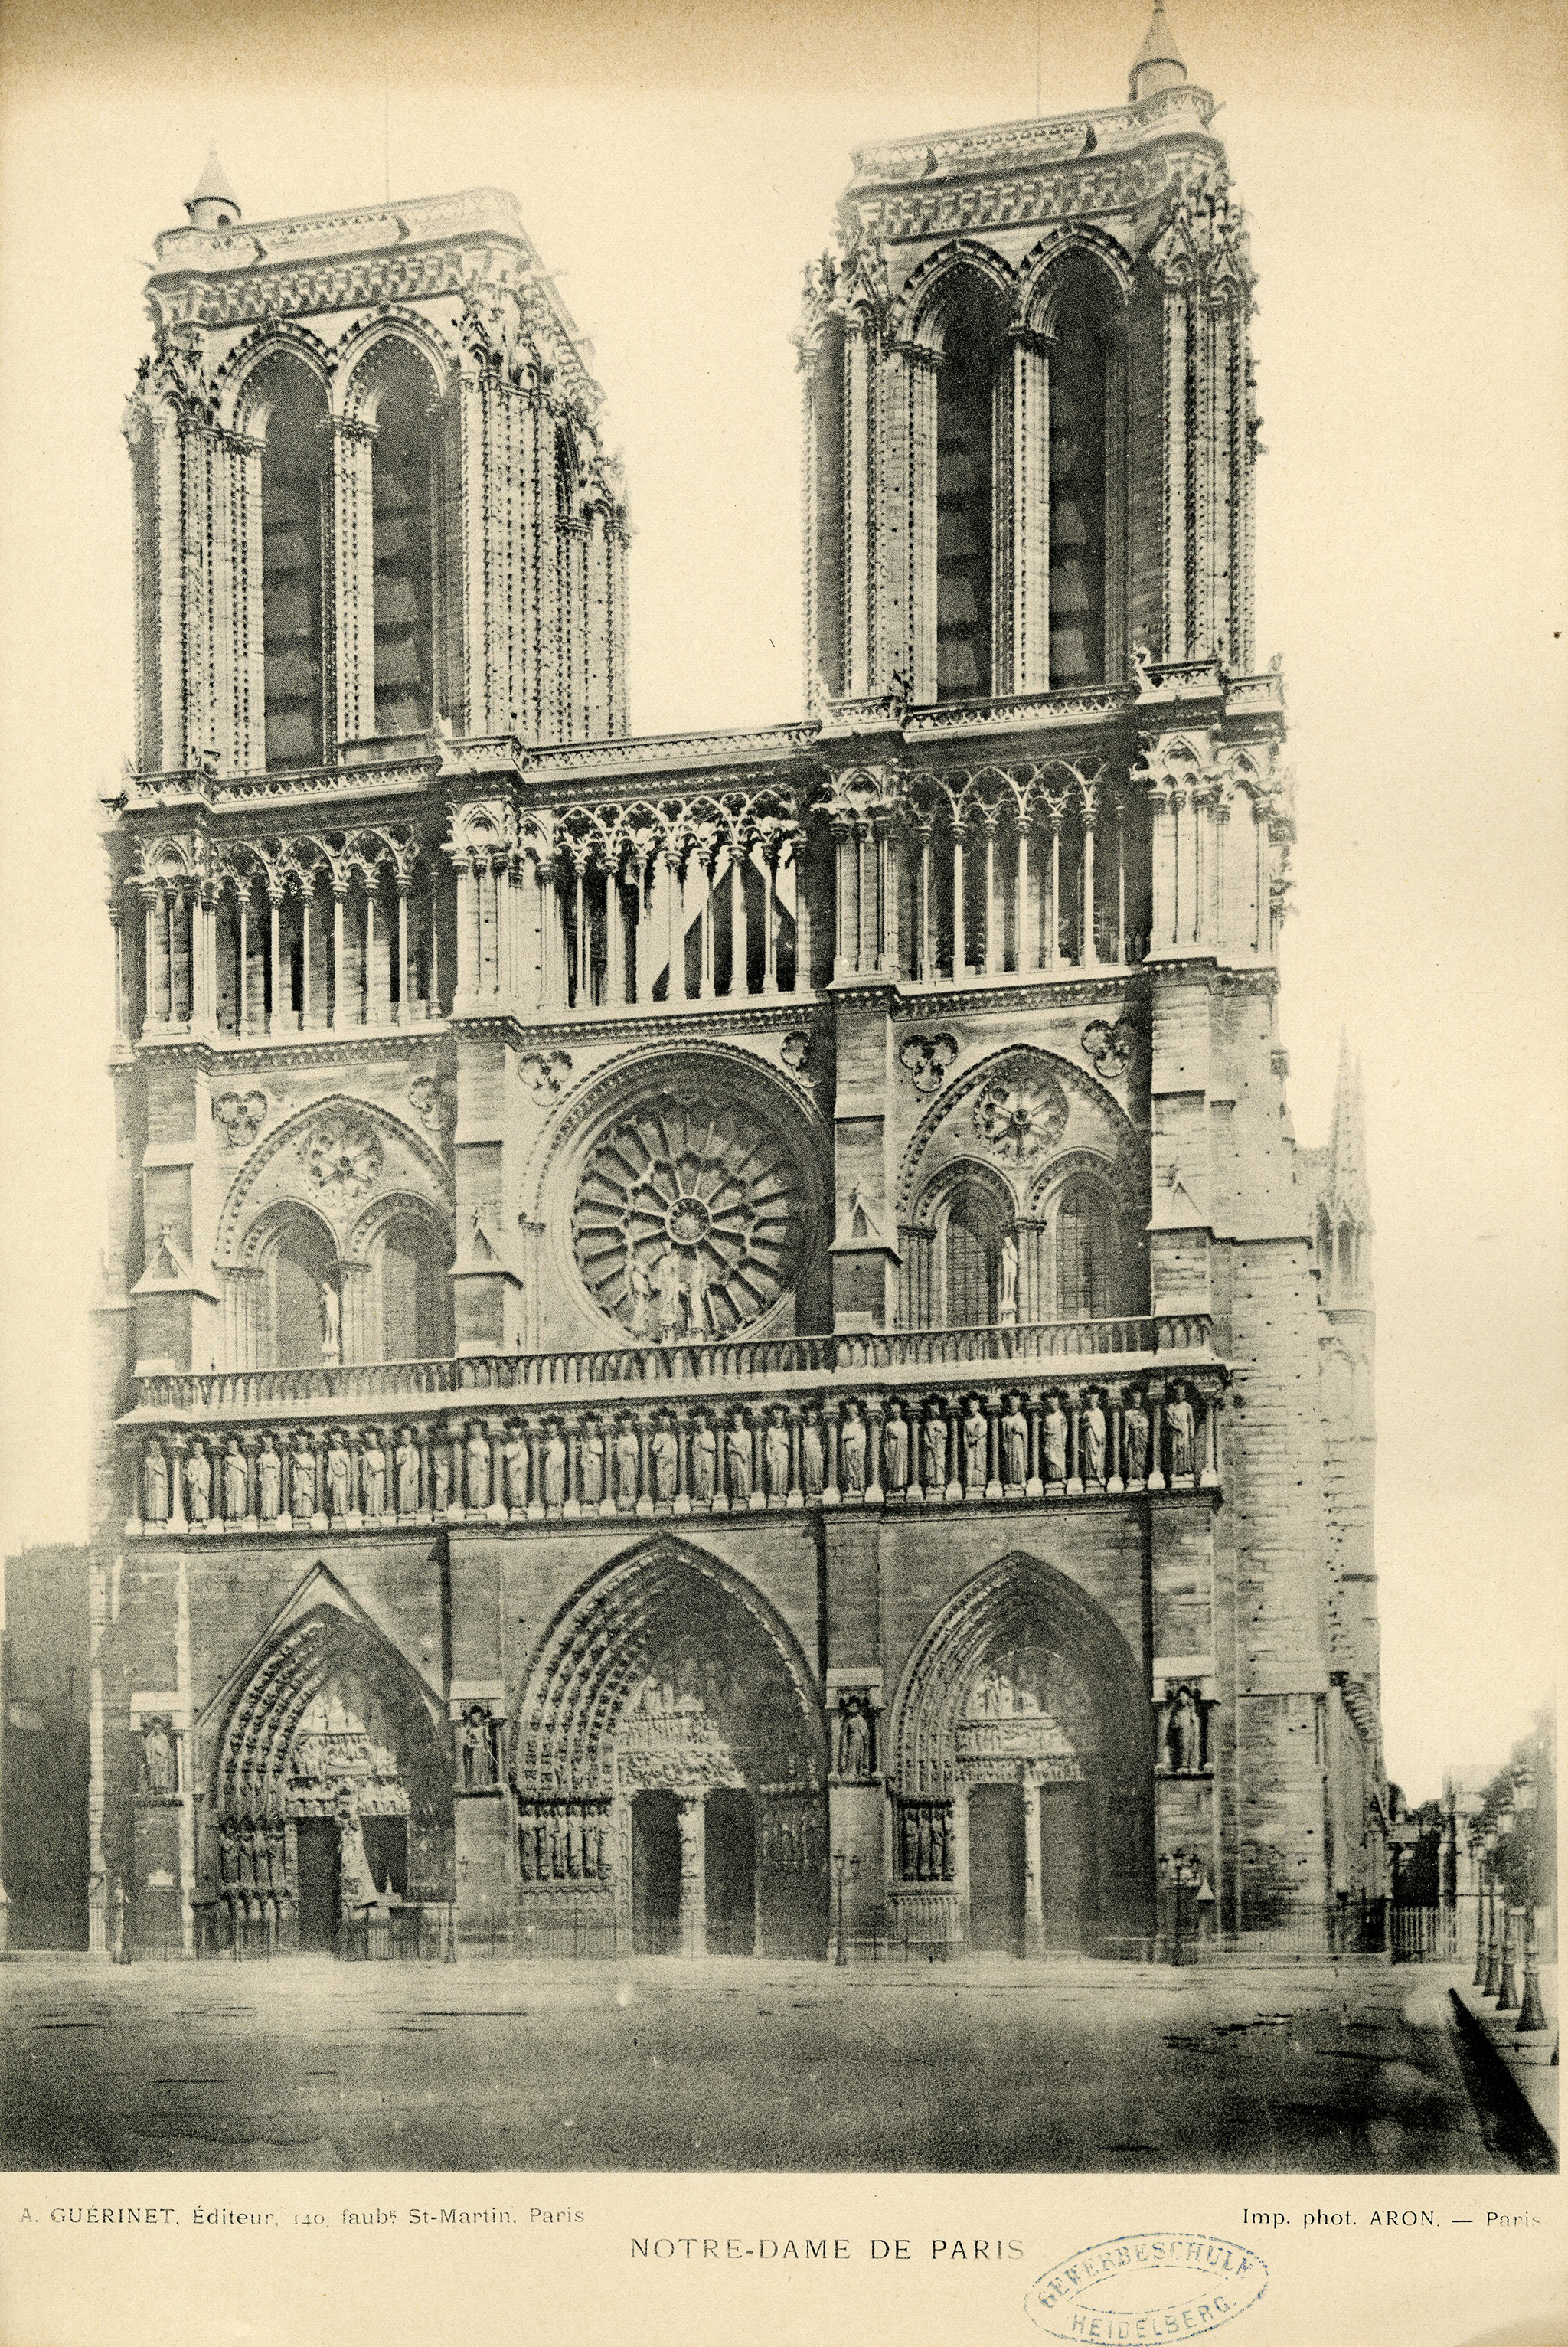 Notre-Dame de Paris, A. Guérinet, Editeur, 140, faubg St-Martin, Paris, Imp. Phot. Aron – Paris, Phototypie, um 1900